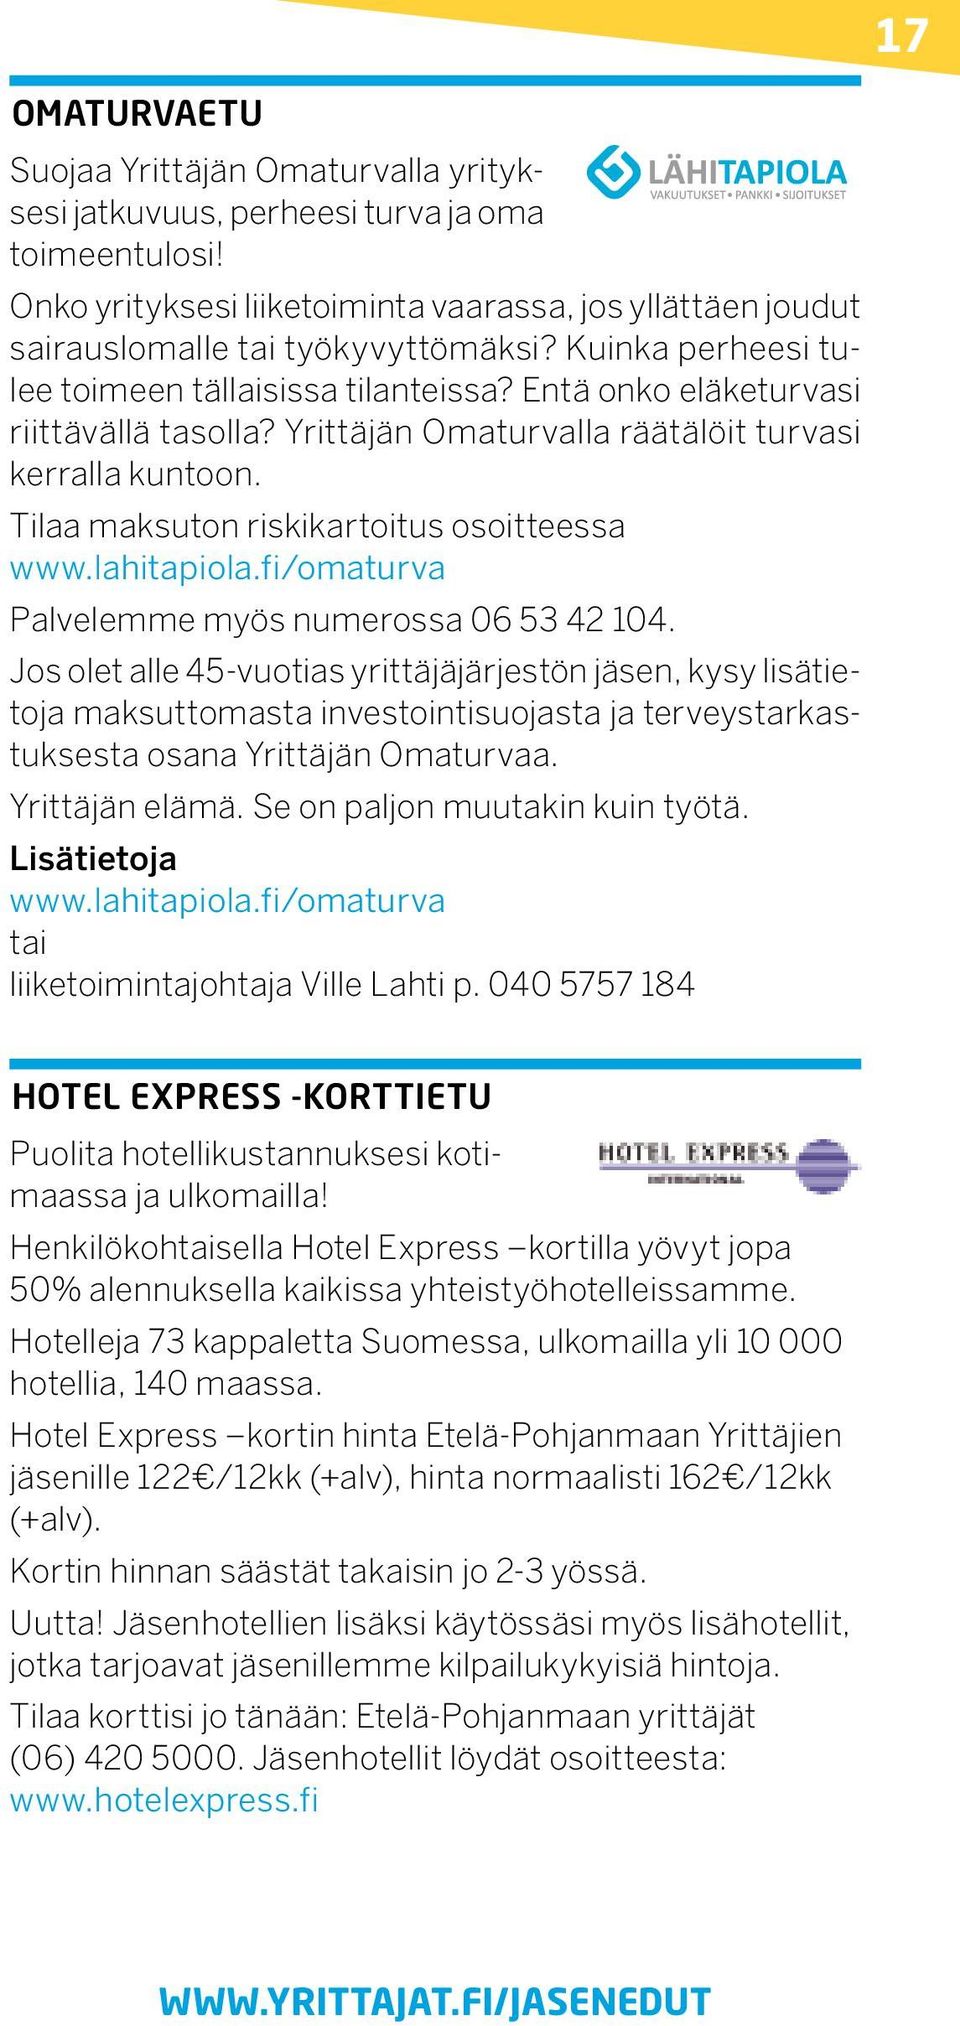 Tilaa maksuton riskikartoitus osoitteessa www.lahitapiola.fi/omaturva Palvelemme myös numerossa 06 53 42 104.